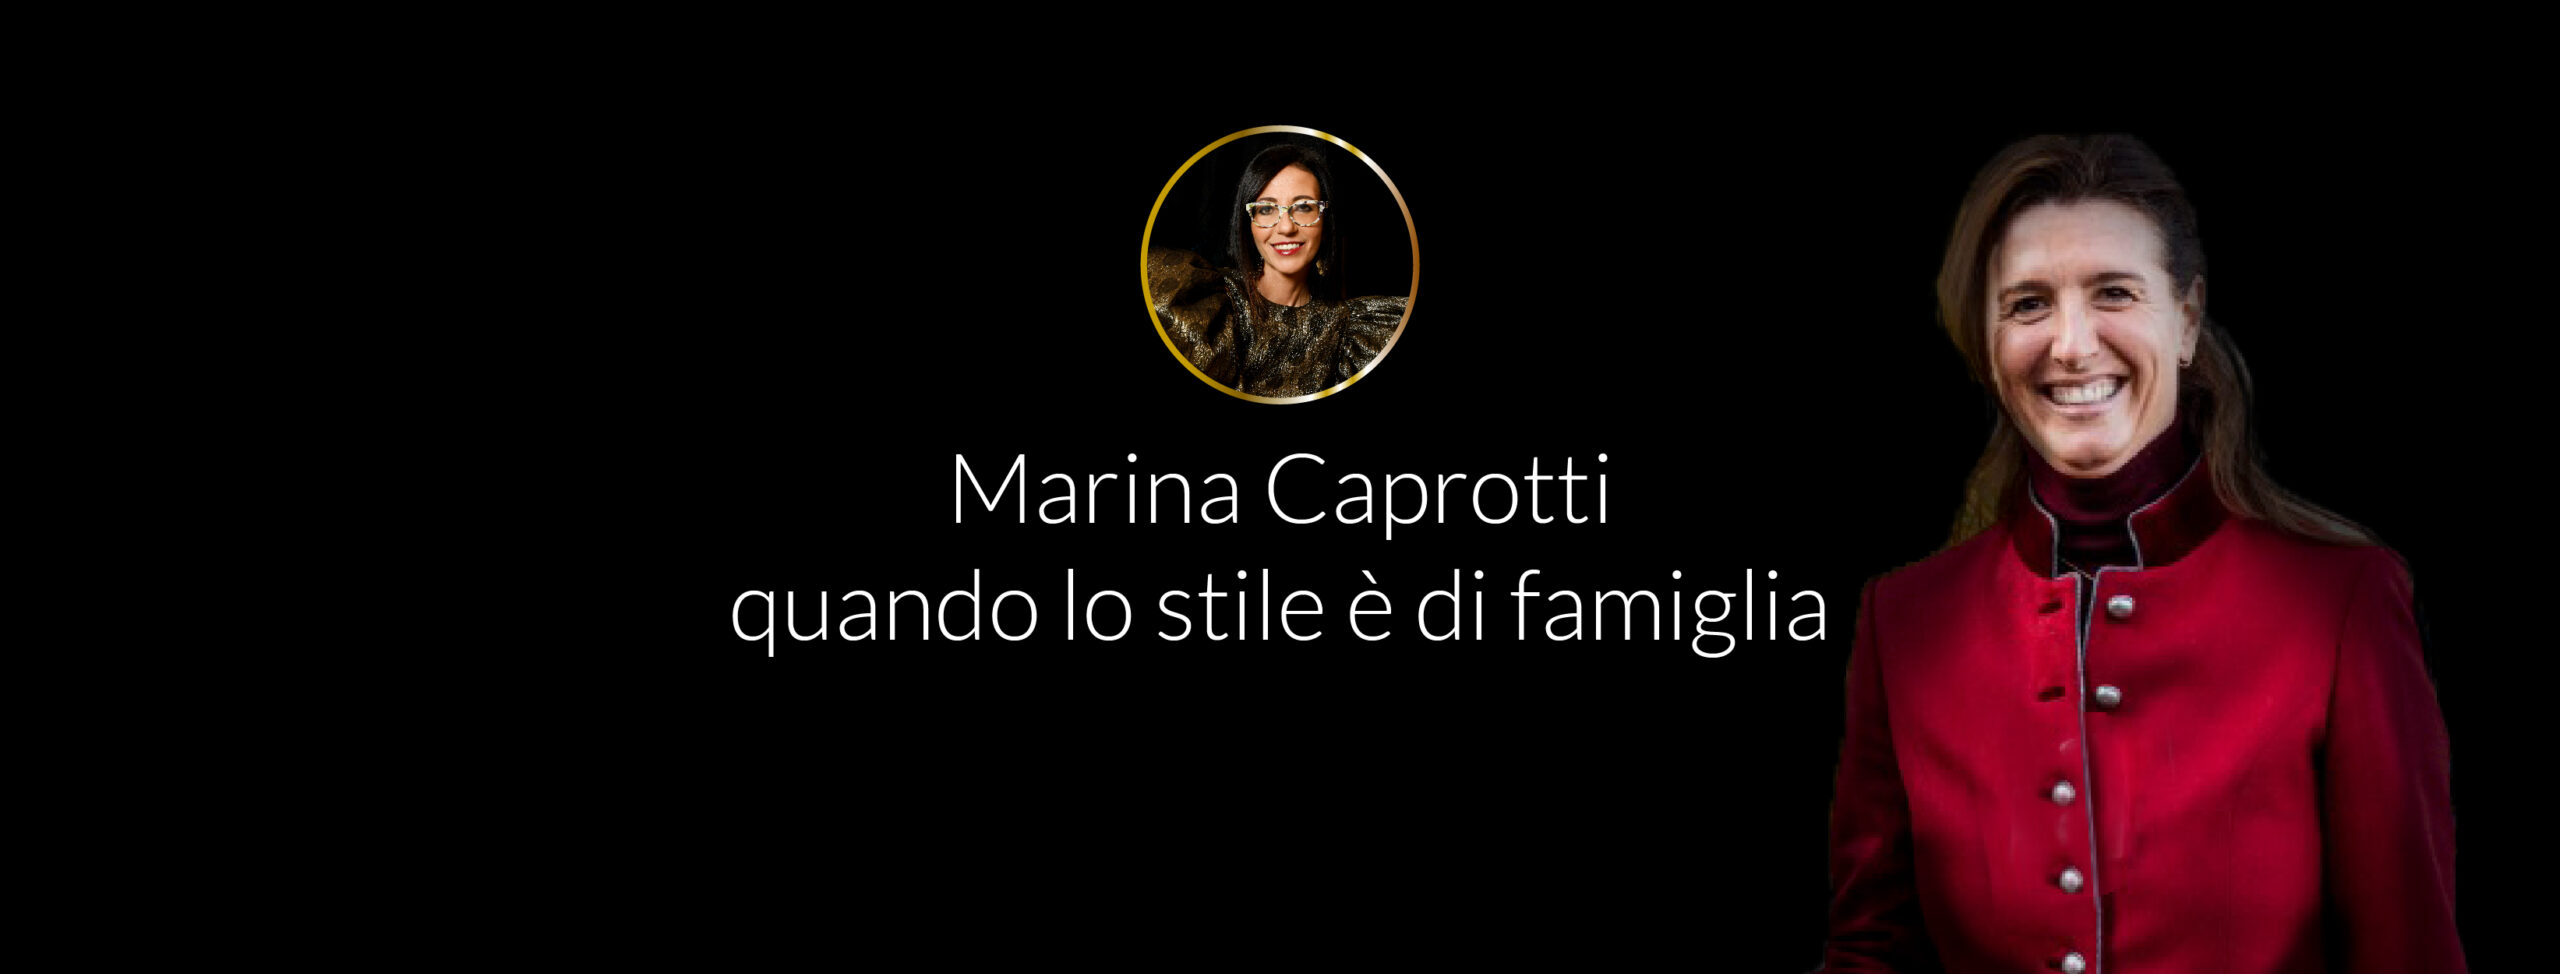 Marina Caprotti